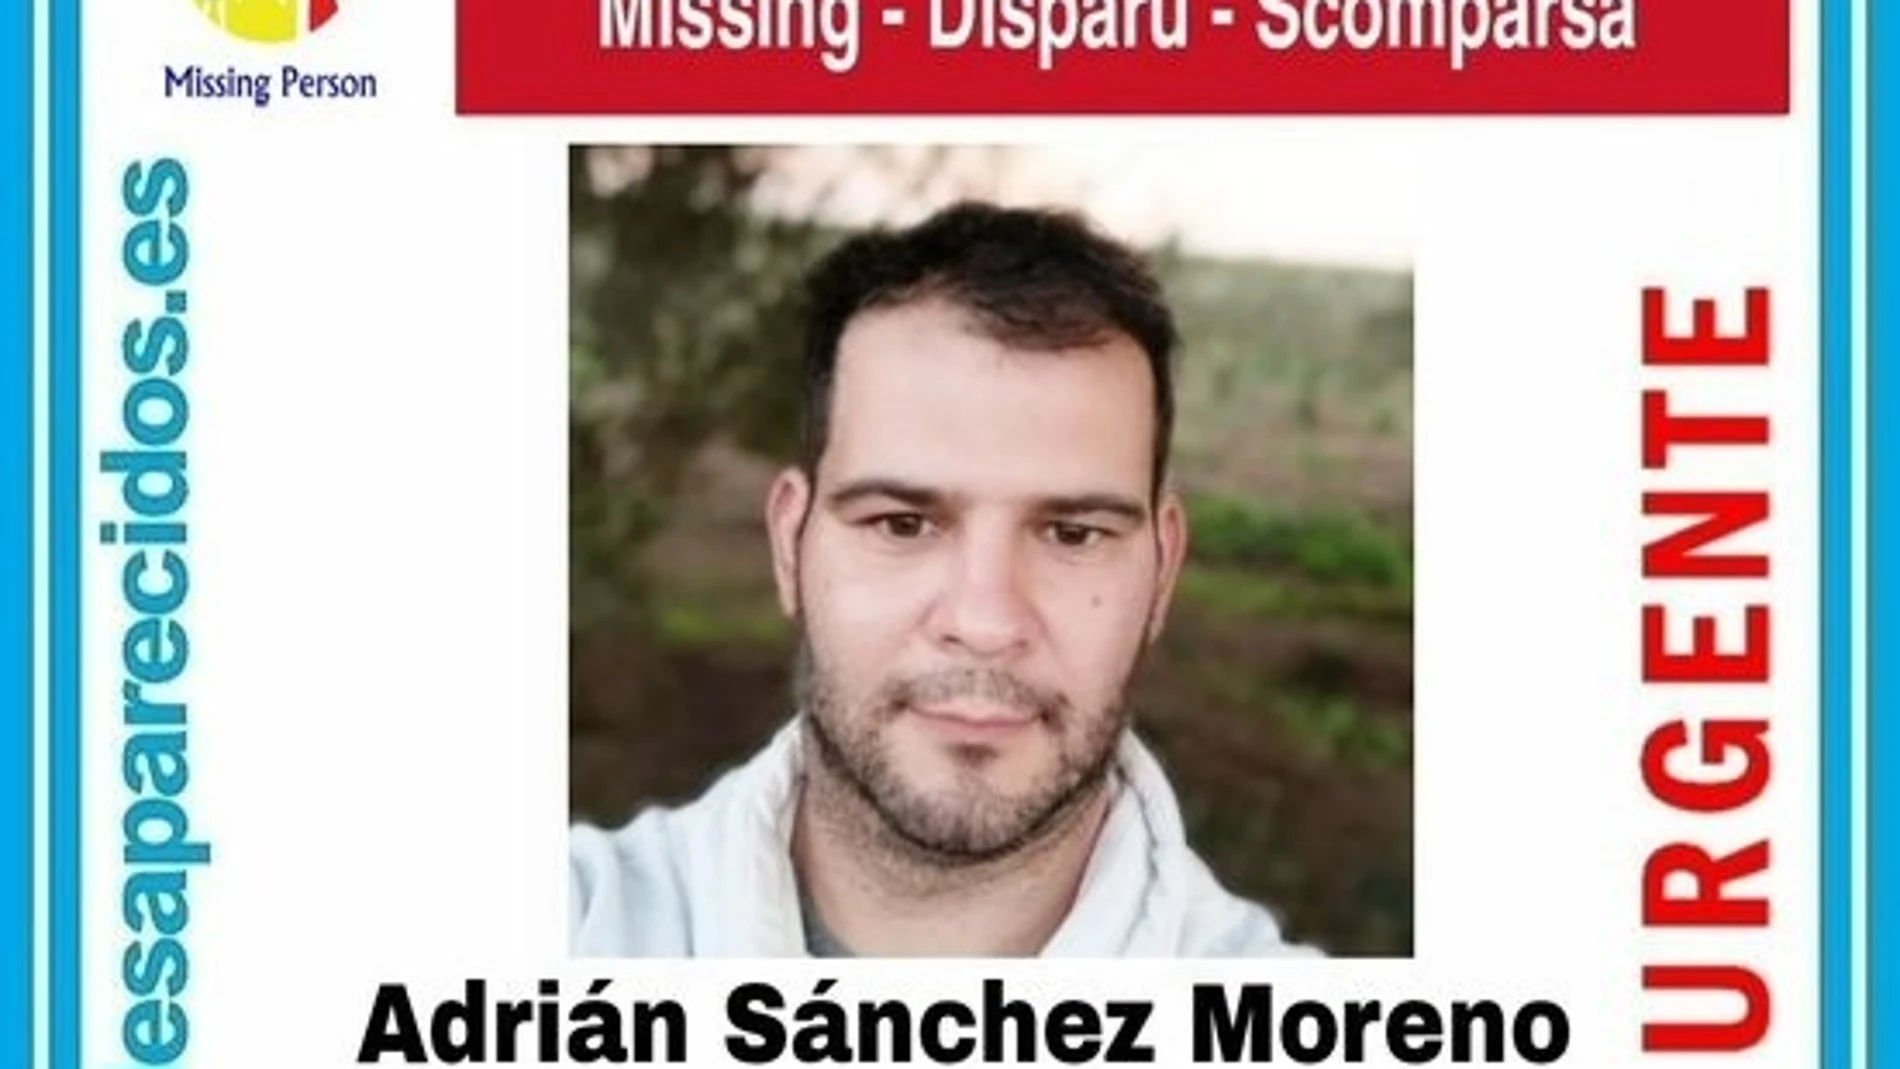 Cartel alertando de la desaparición de Adrián Sánchez Moreno. SOS DESAPARECIDOS